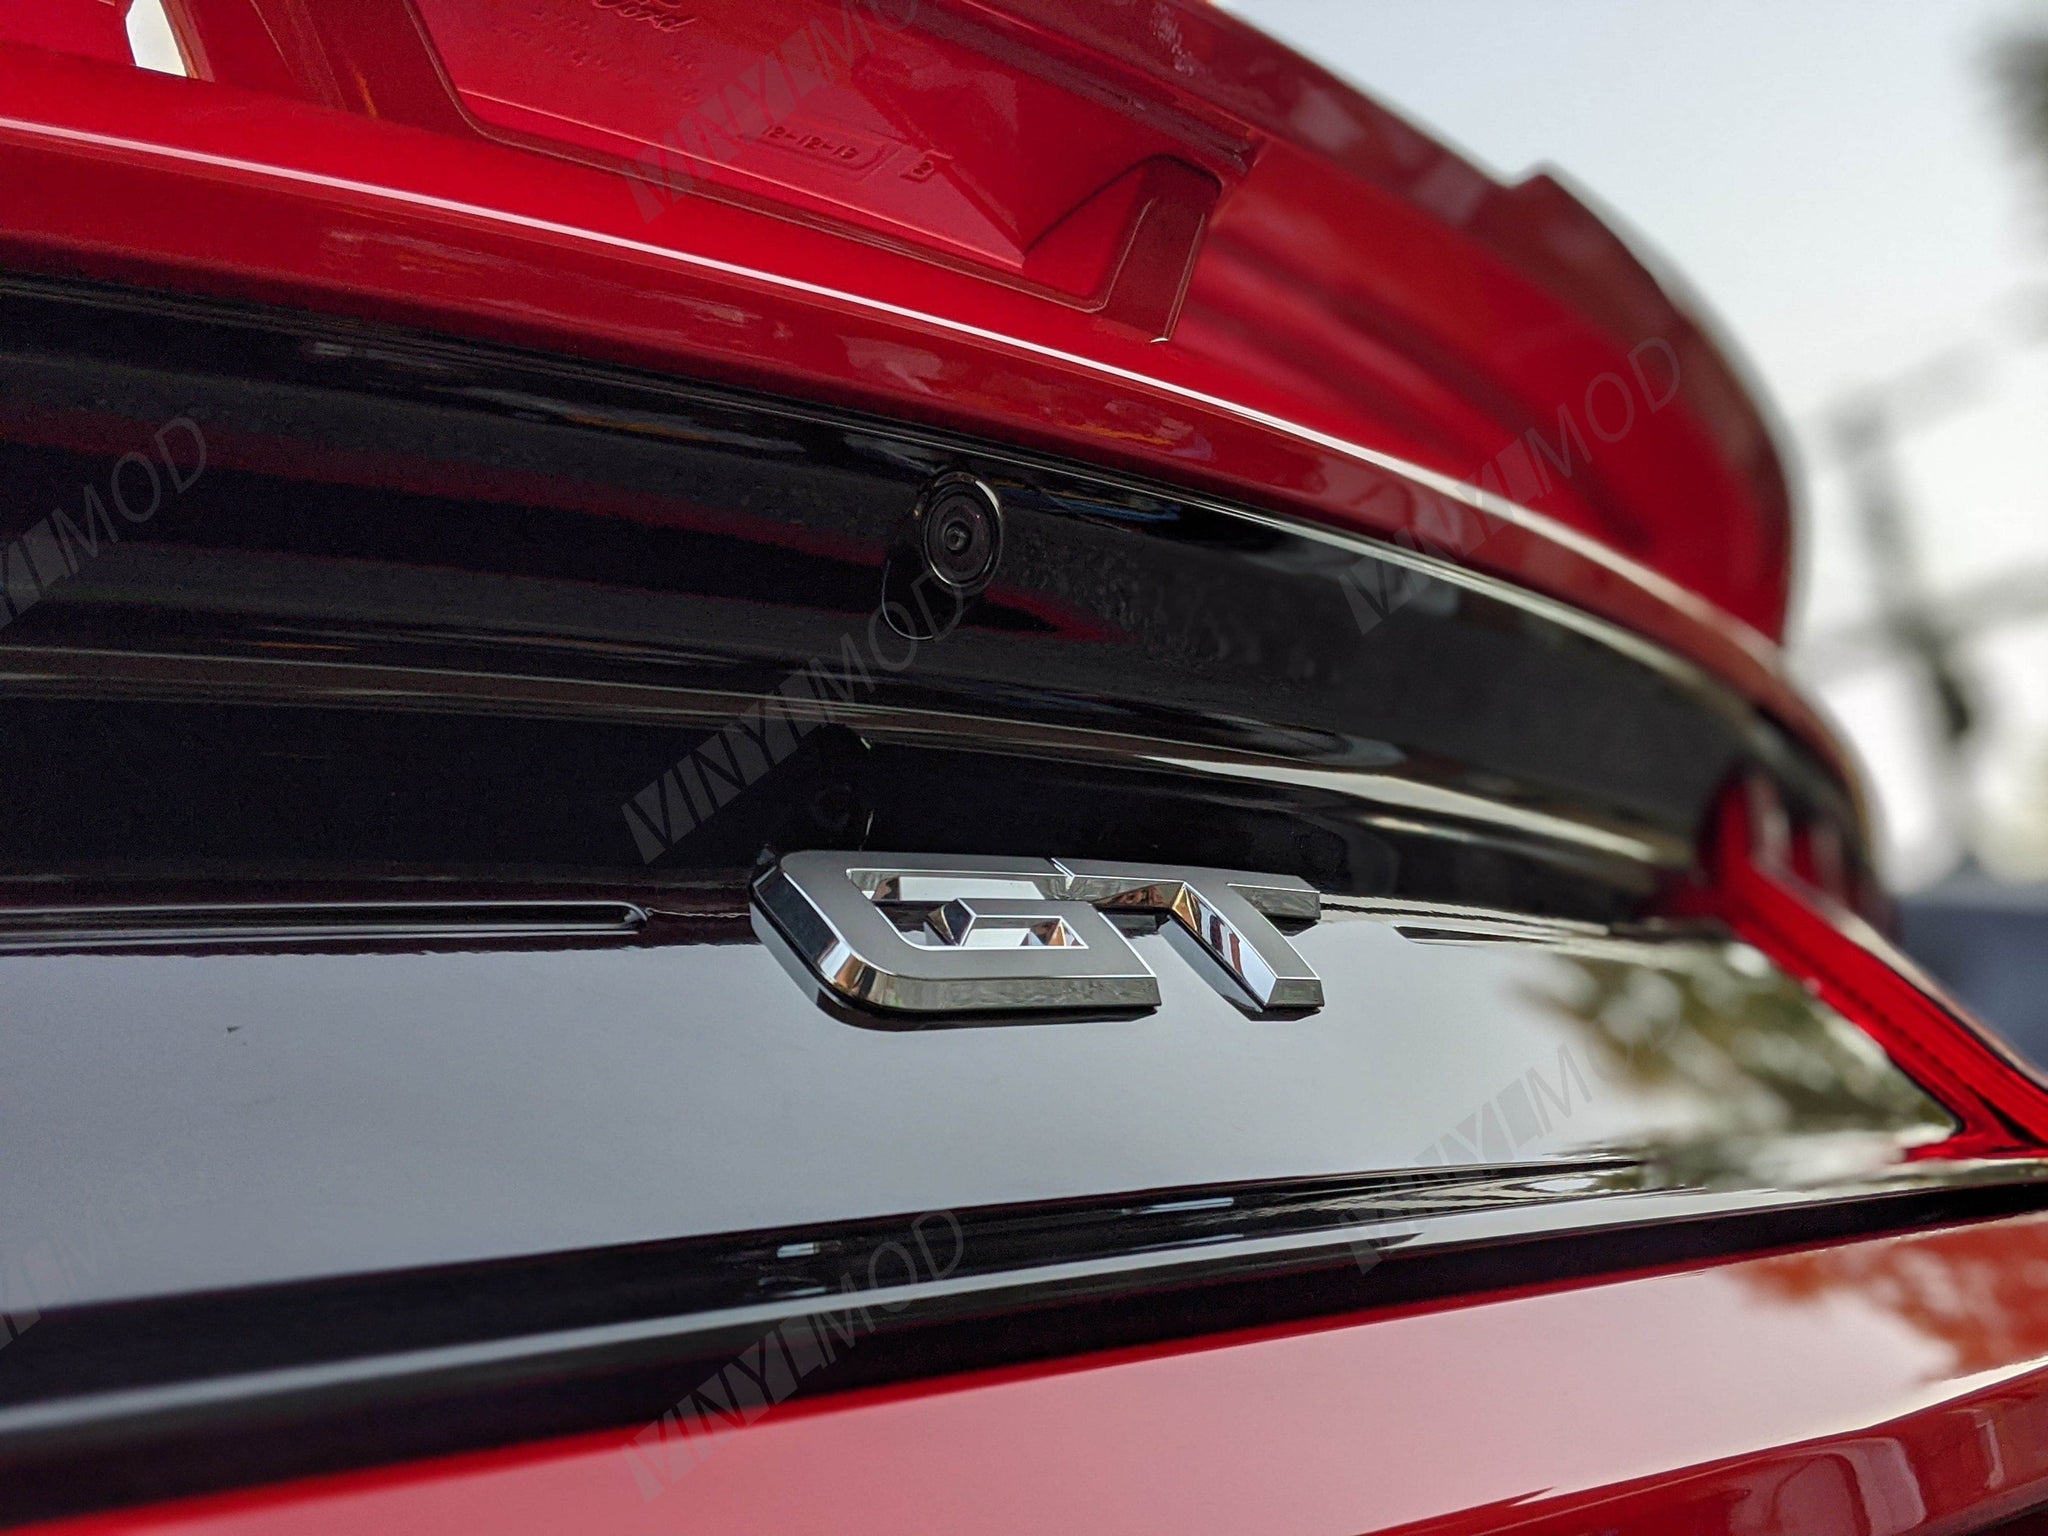 2015+ (6th Gen) Ford Mustang - Rear GT Emblem VinylMod Overlays